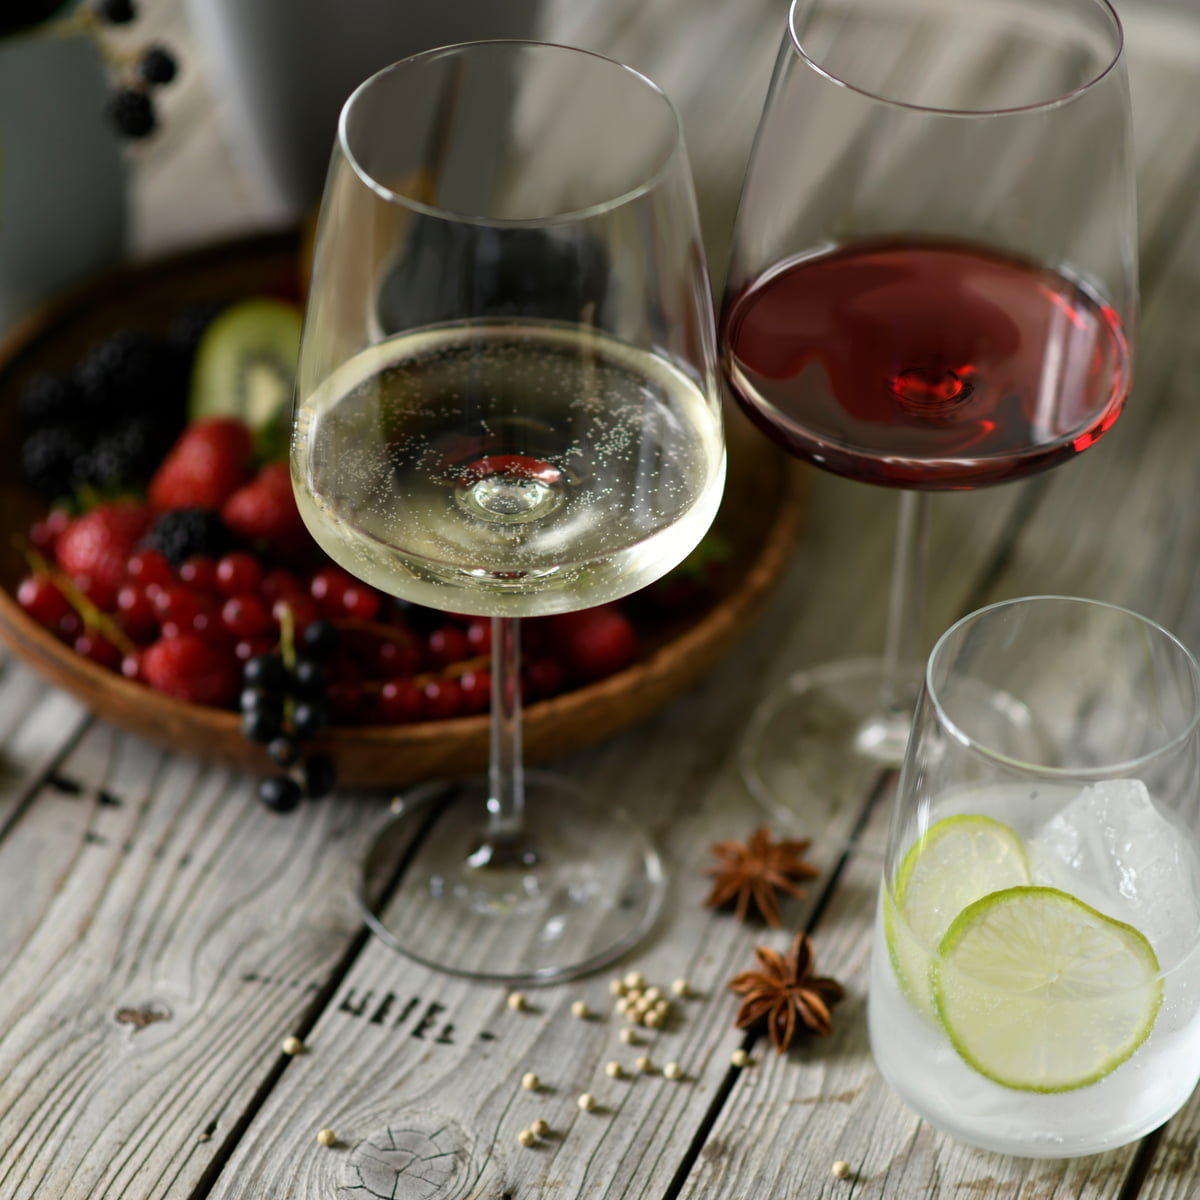 Stem Zero Set of 2 Elegant Red Wine Glasses Medium